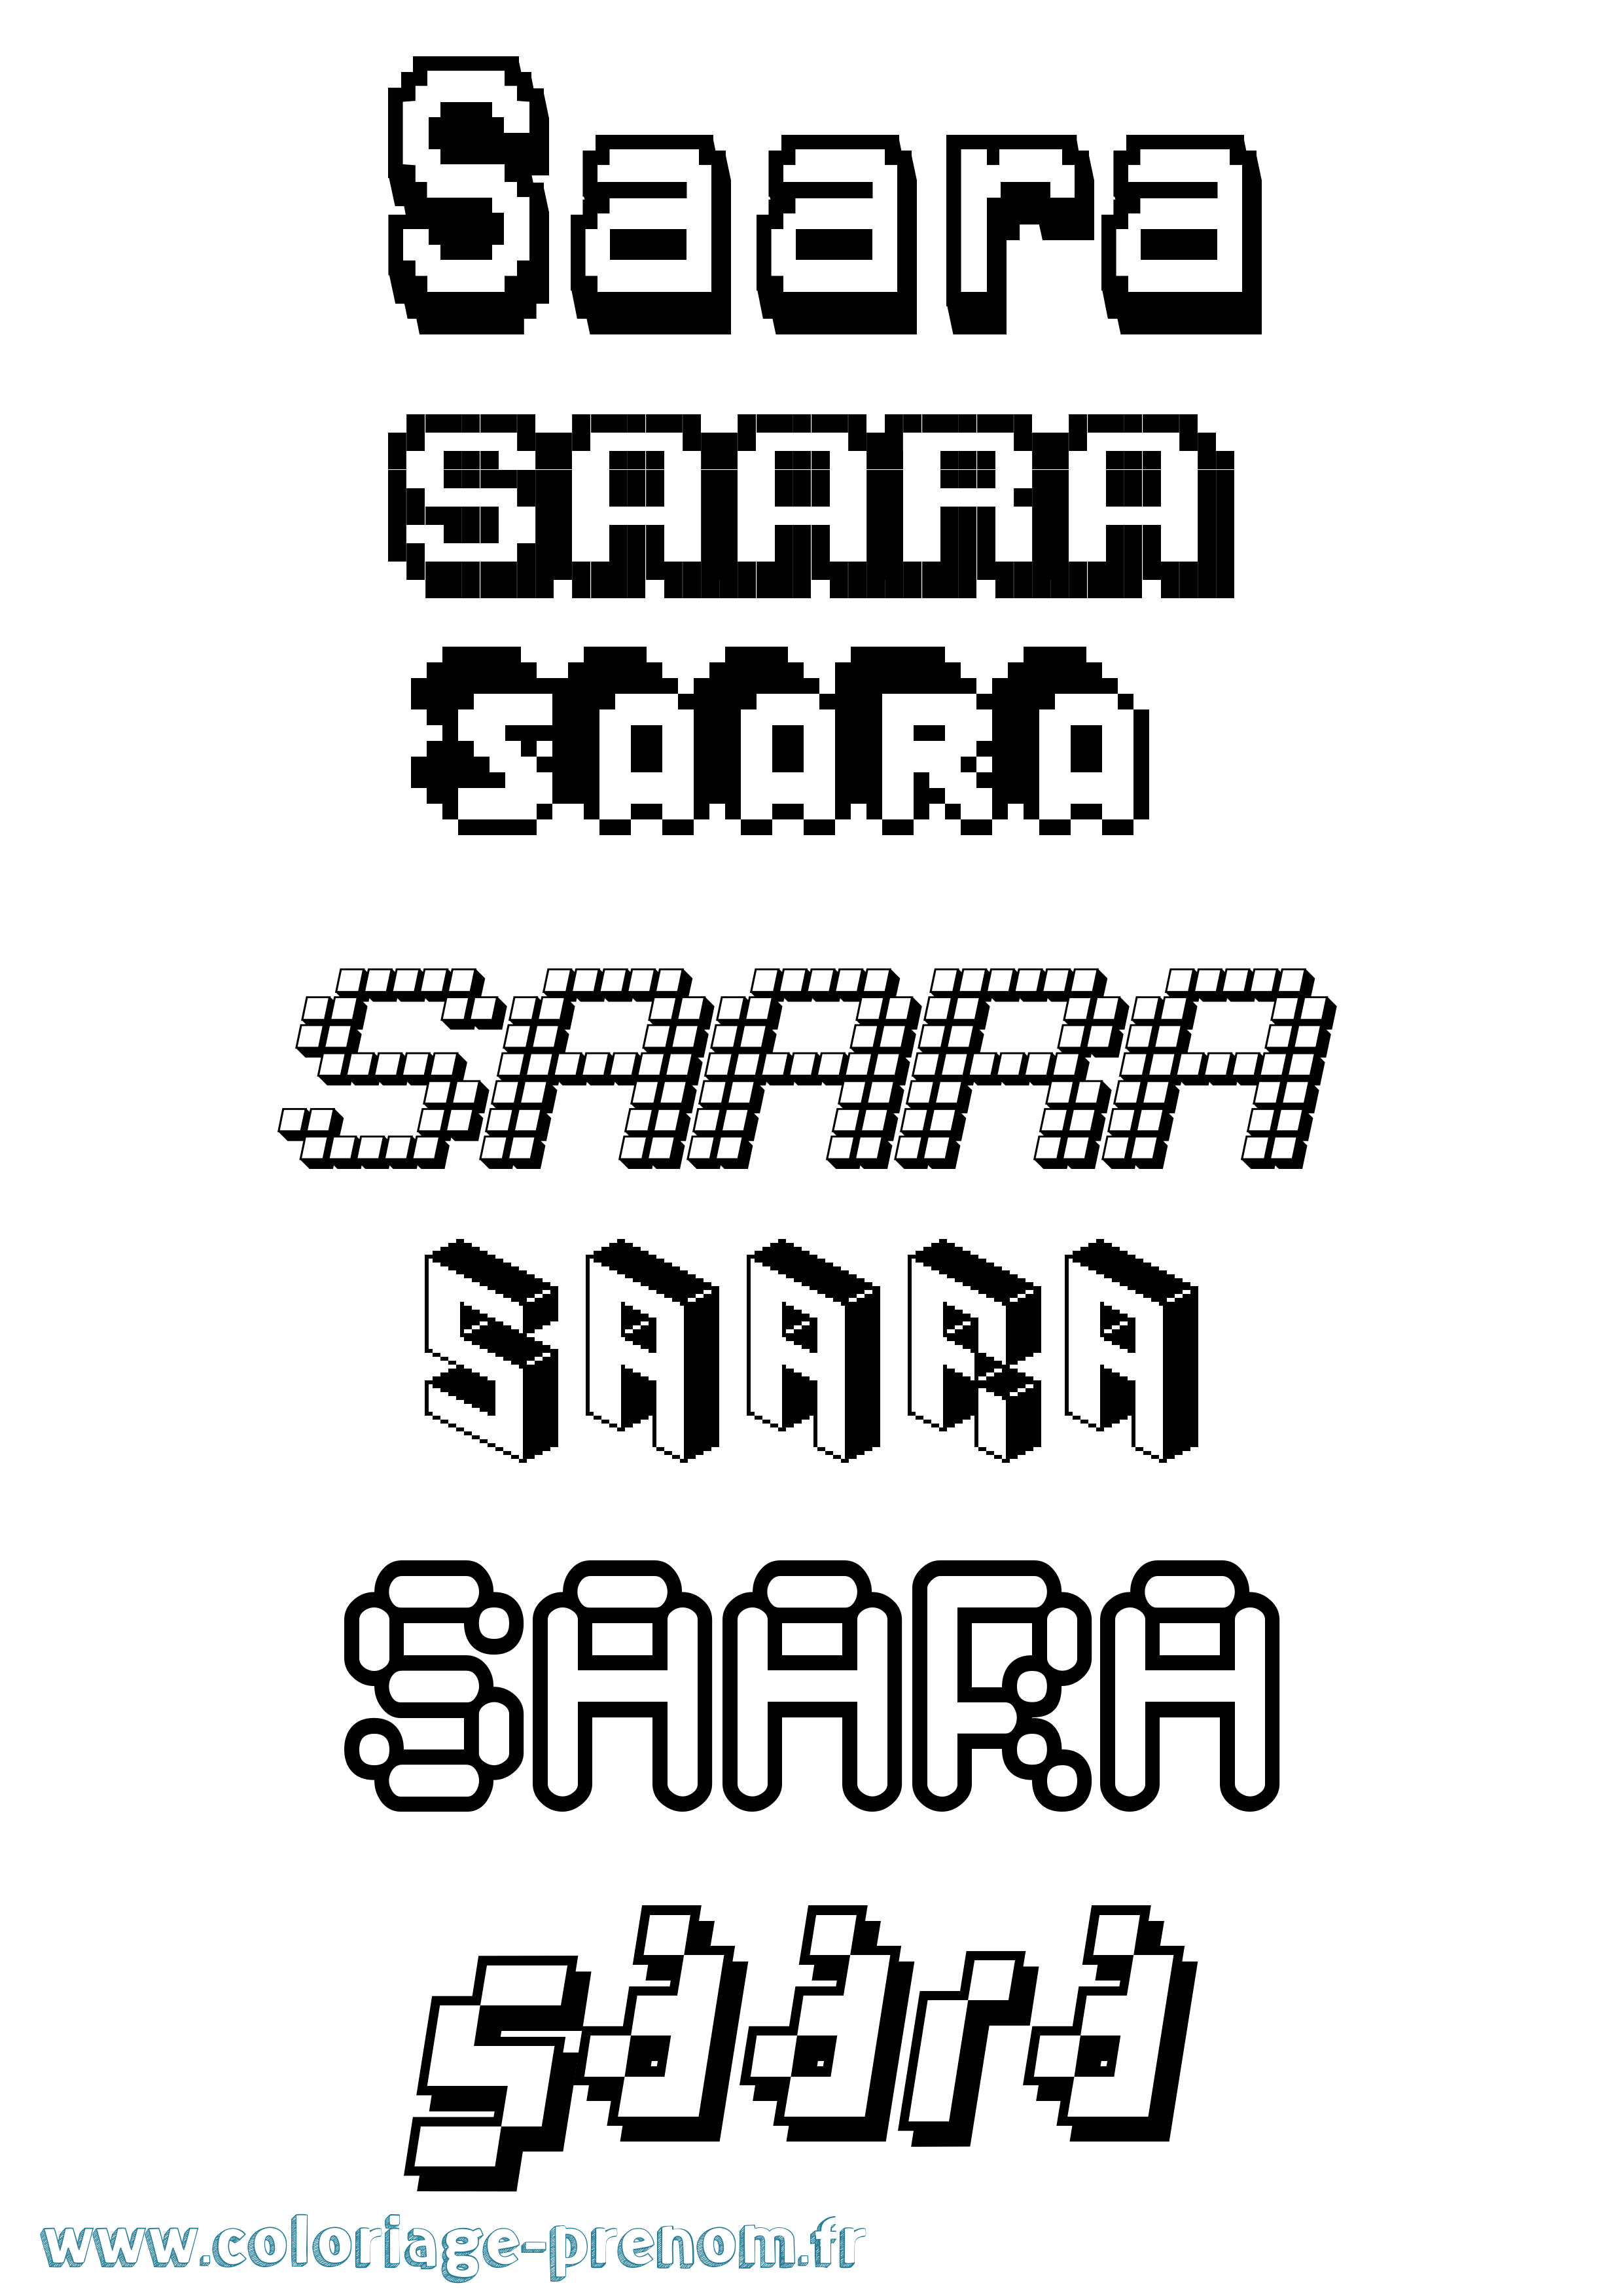 Coloriage prénom Saara Pixel